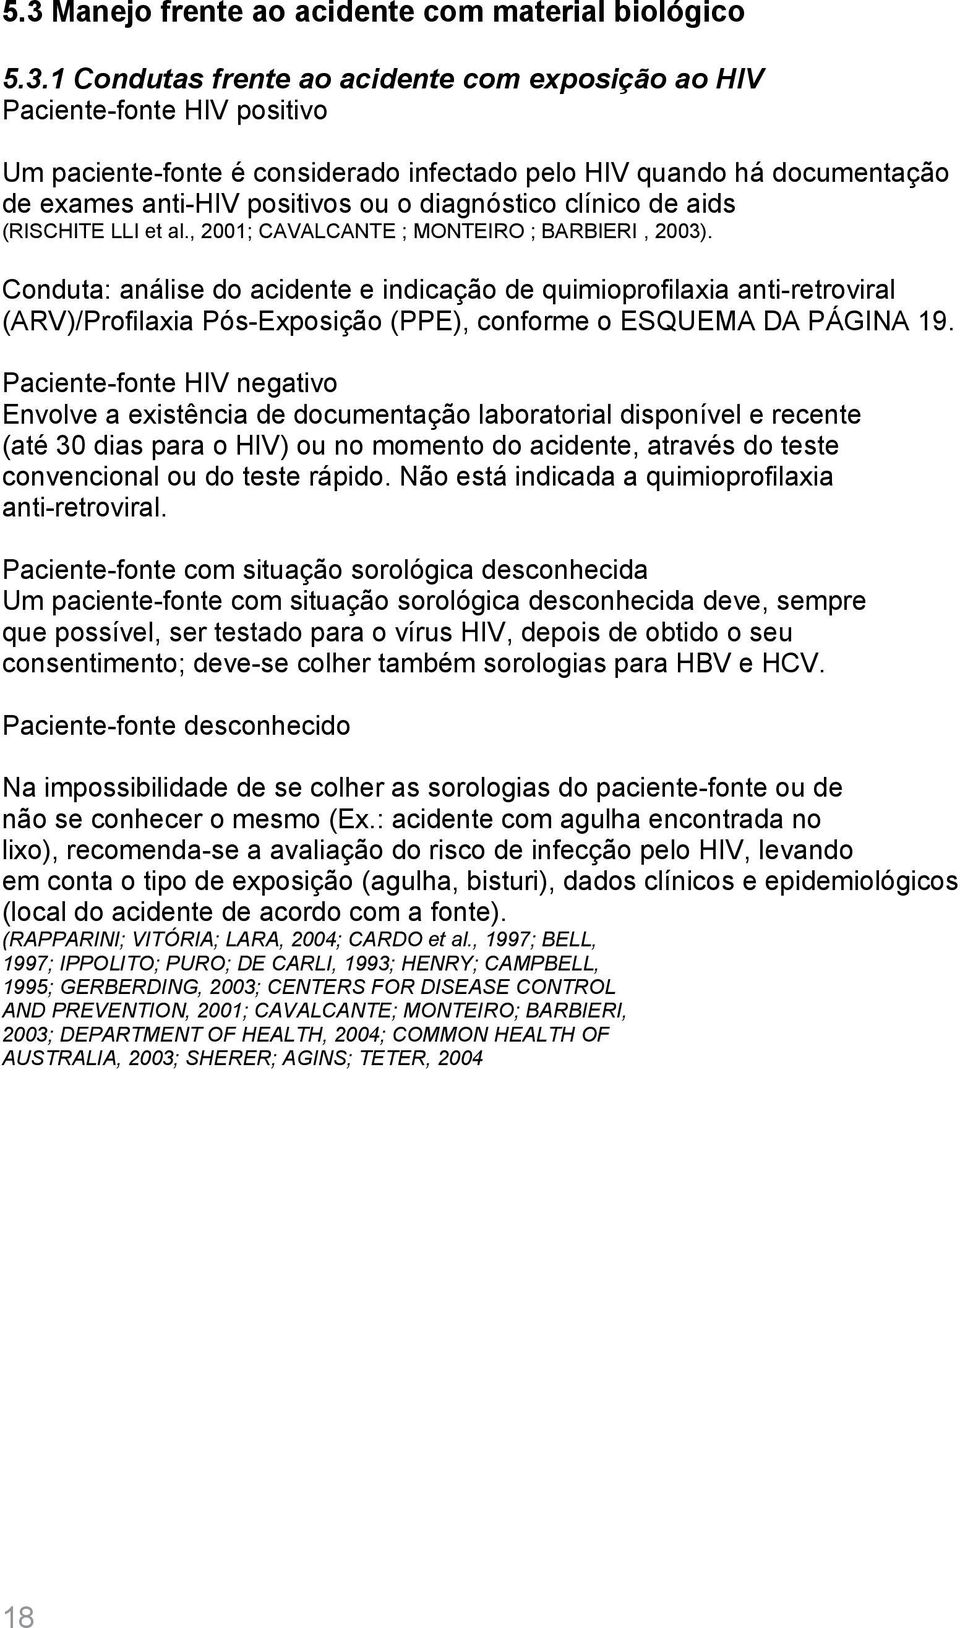 Conduta: análise do acidente e indicação de quimioprofilaxia anti-retroviral (ARV)/Profilaxia Pós-Exposição (PPE), conforme o ESQUEMA DA PÁGINA 19.